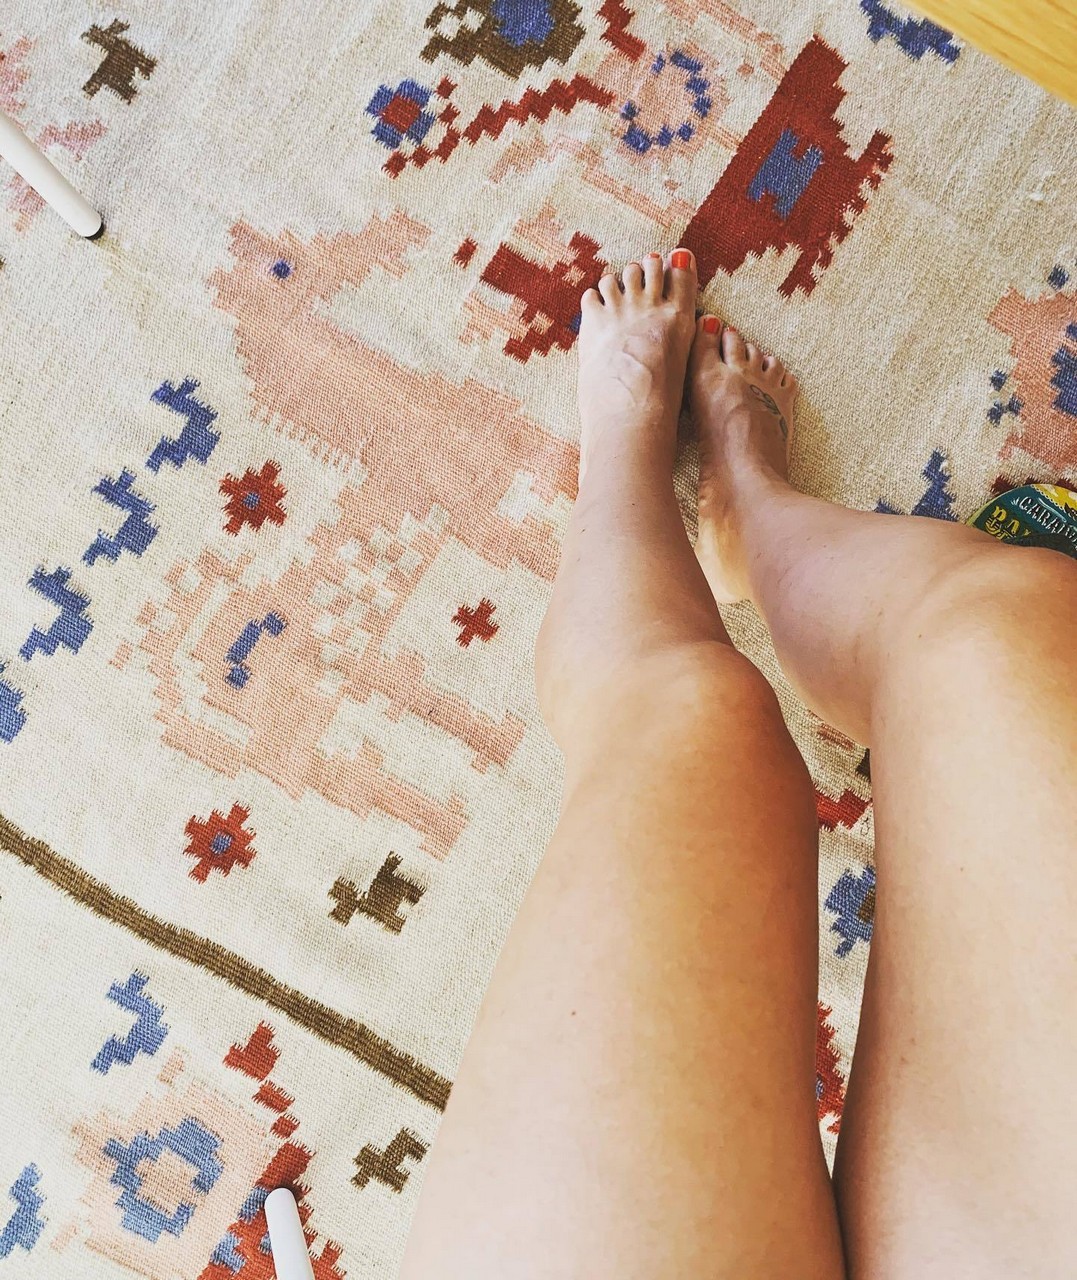 Cristiana Dellanna Feet